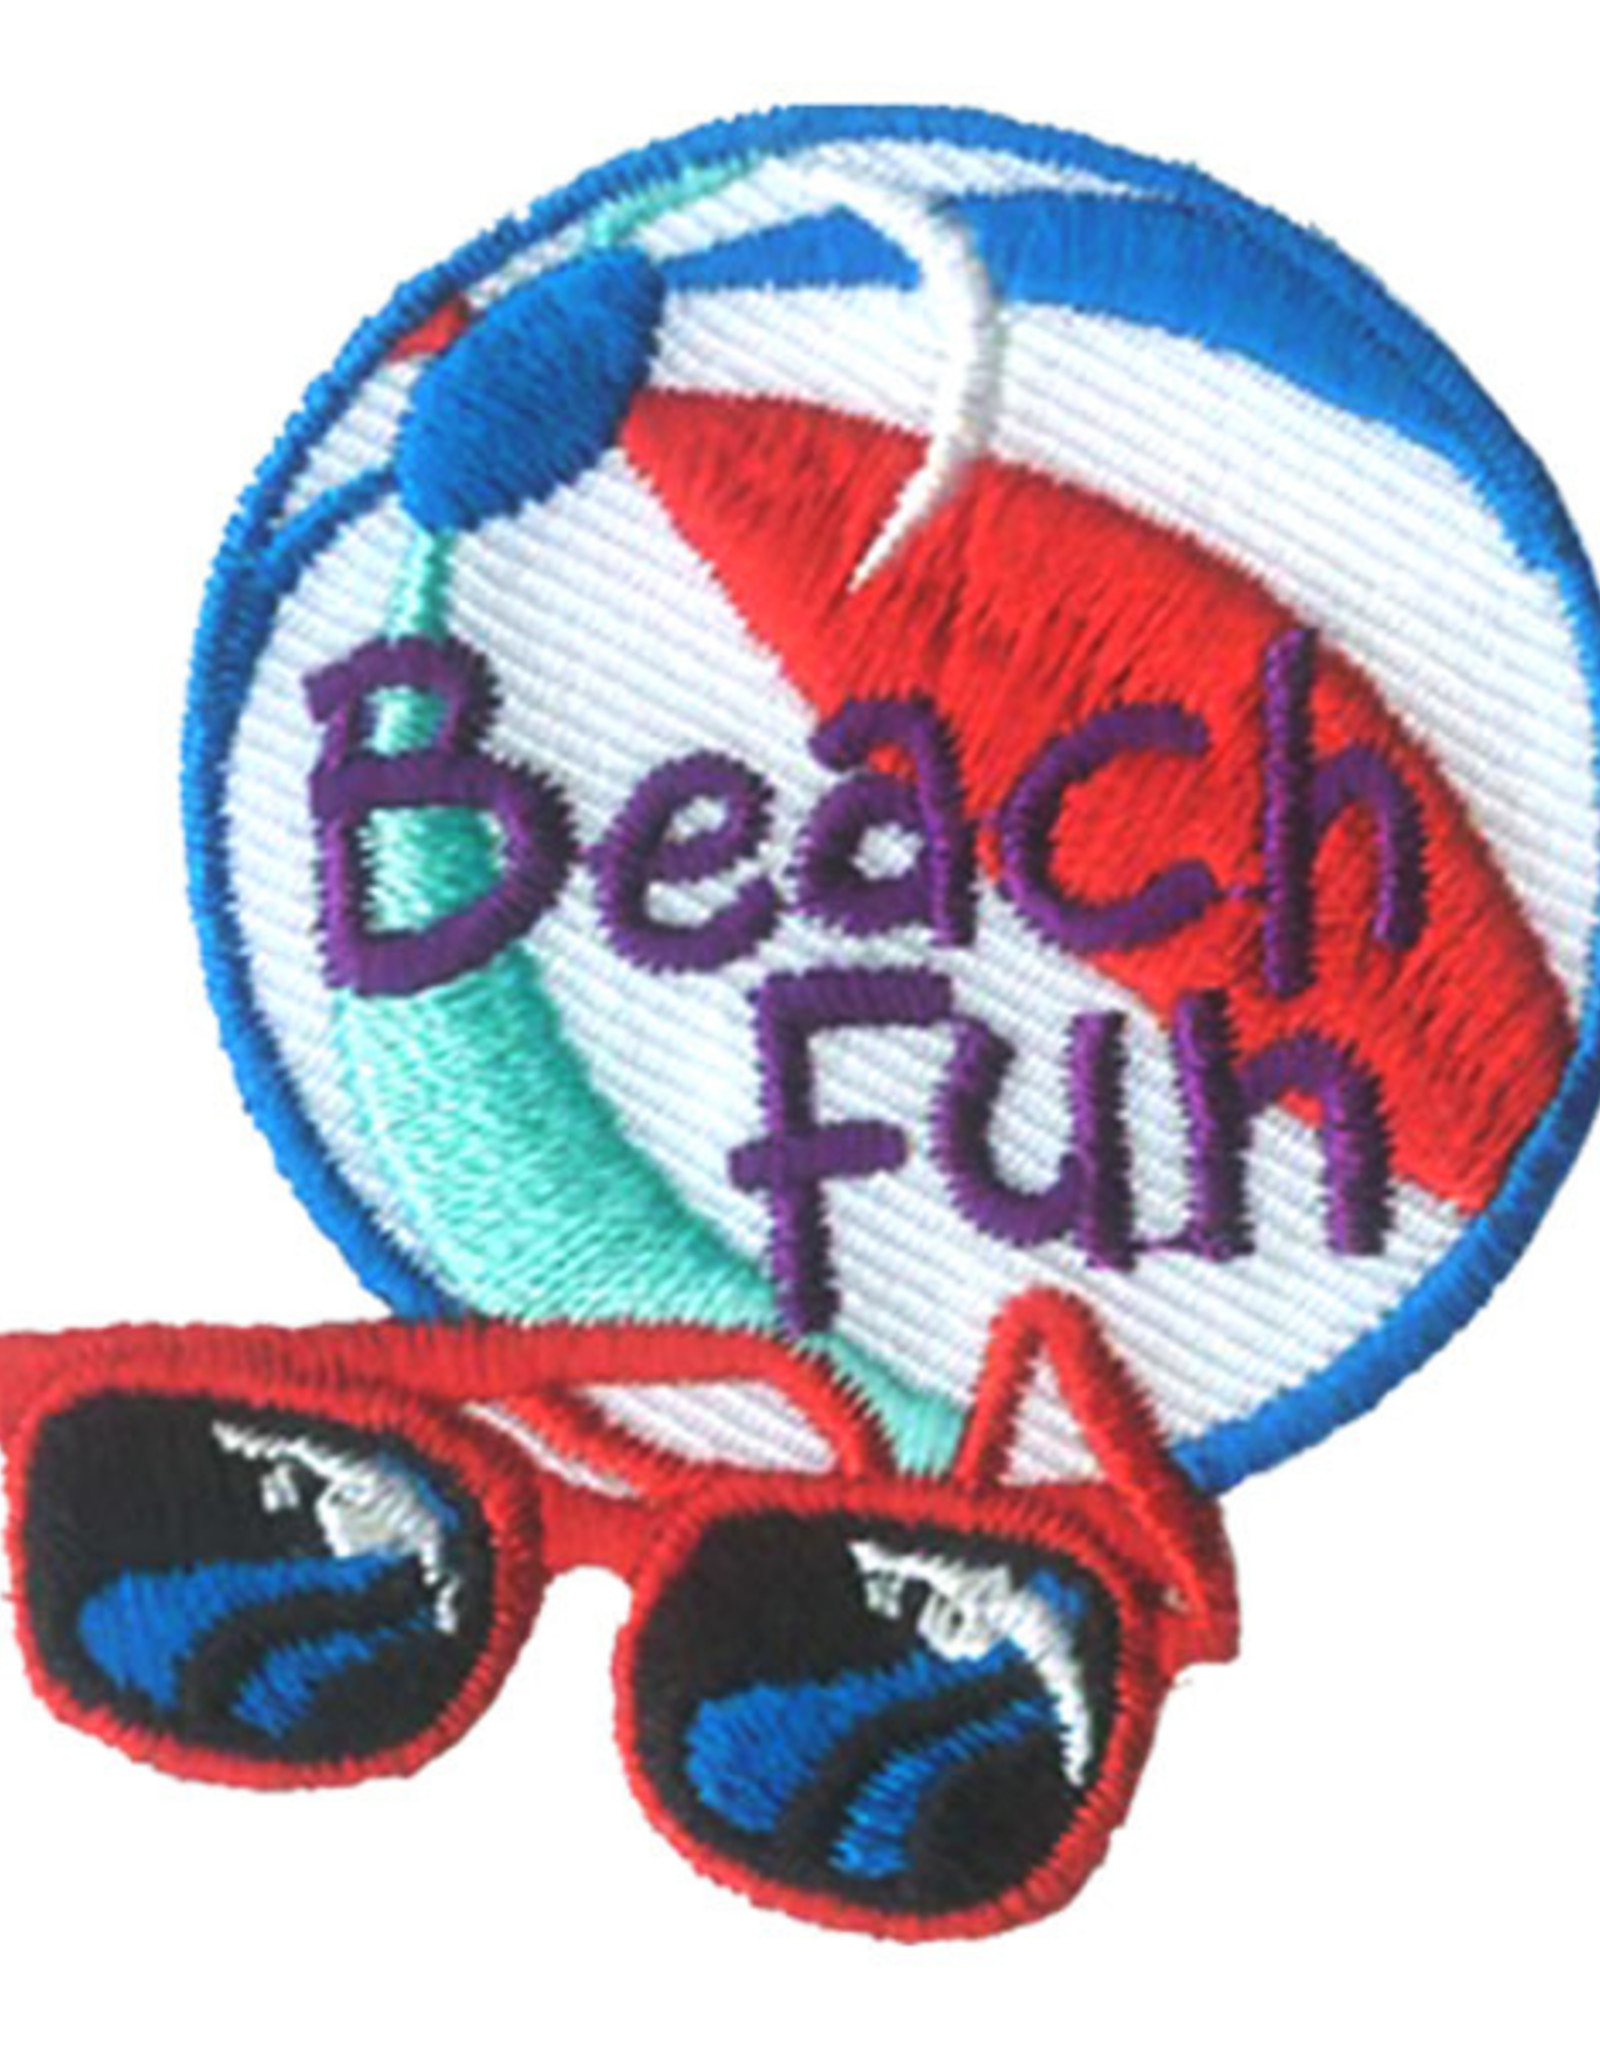 Advantage Emblem & Screen Prnt Beach Fun w/ Ball & Sunglasses Fun Patch